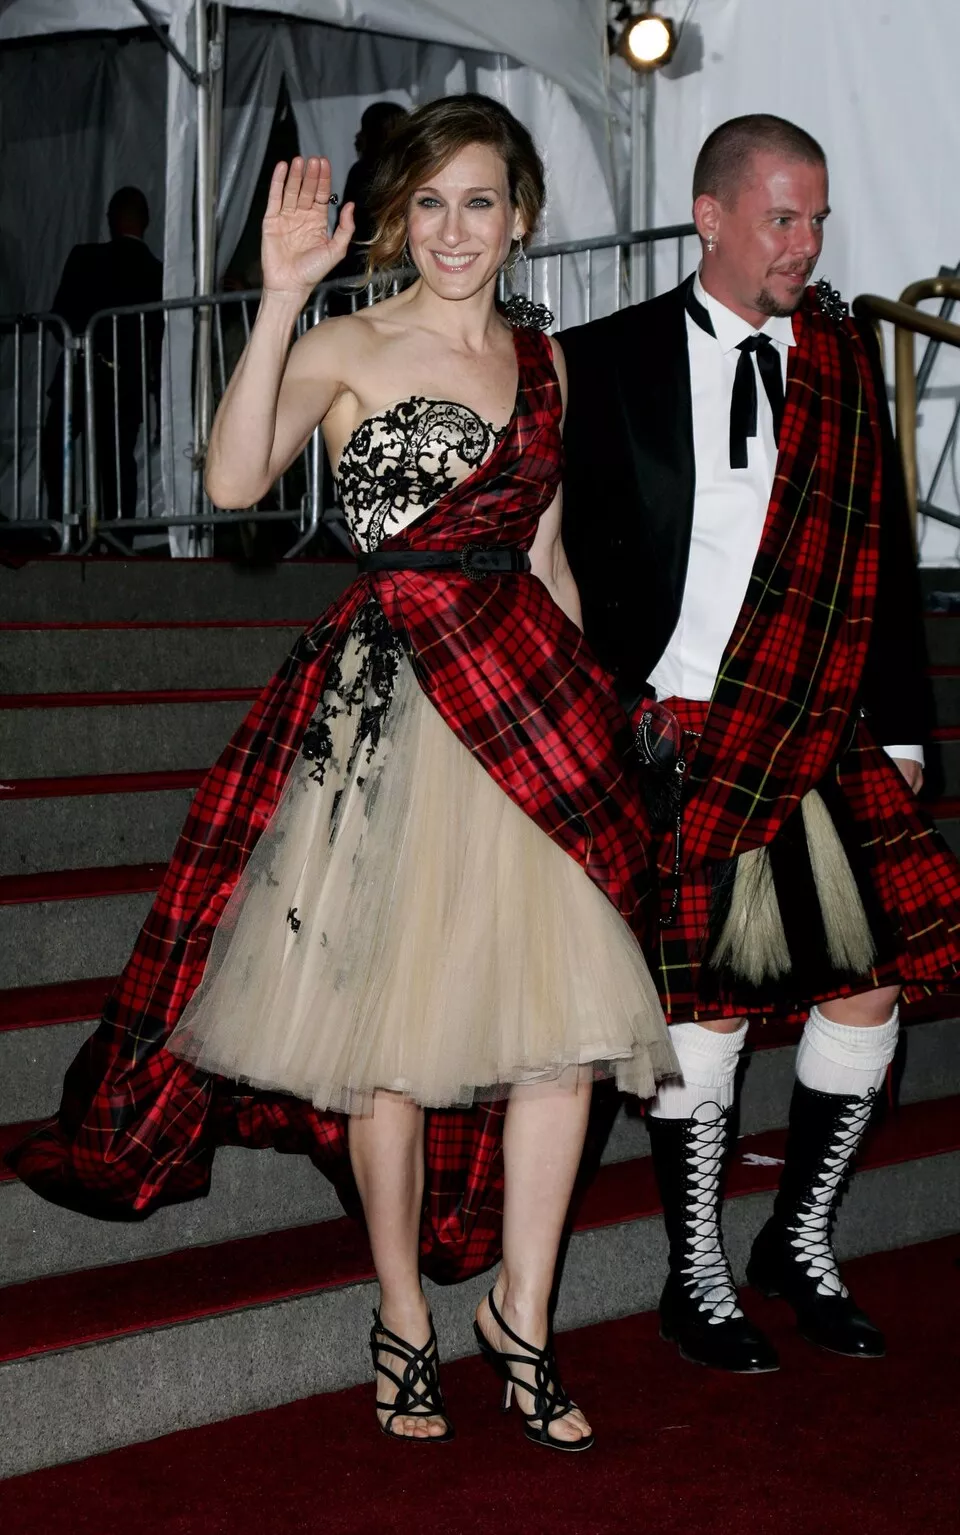 Sarah Jessica Parker y Alexander McQueen llevaron estos particulares outfits para responder a la consigna de: "AngloMania: Tradition and Transgression in British Fashion".